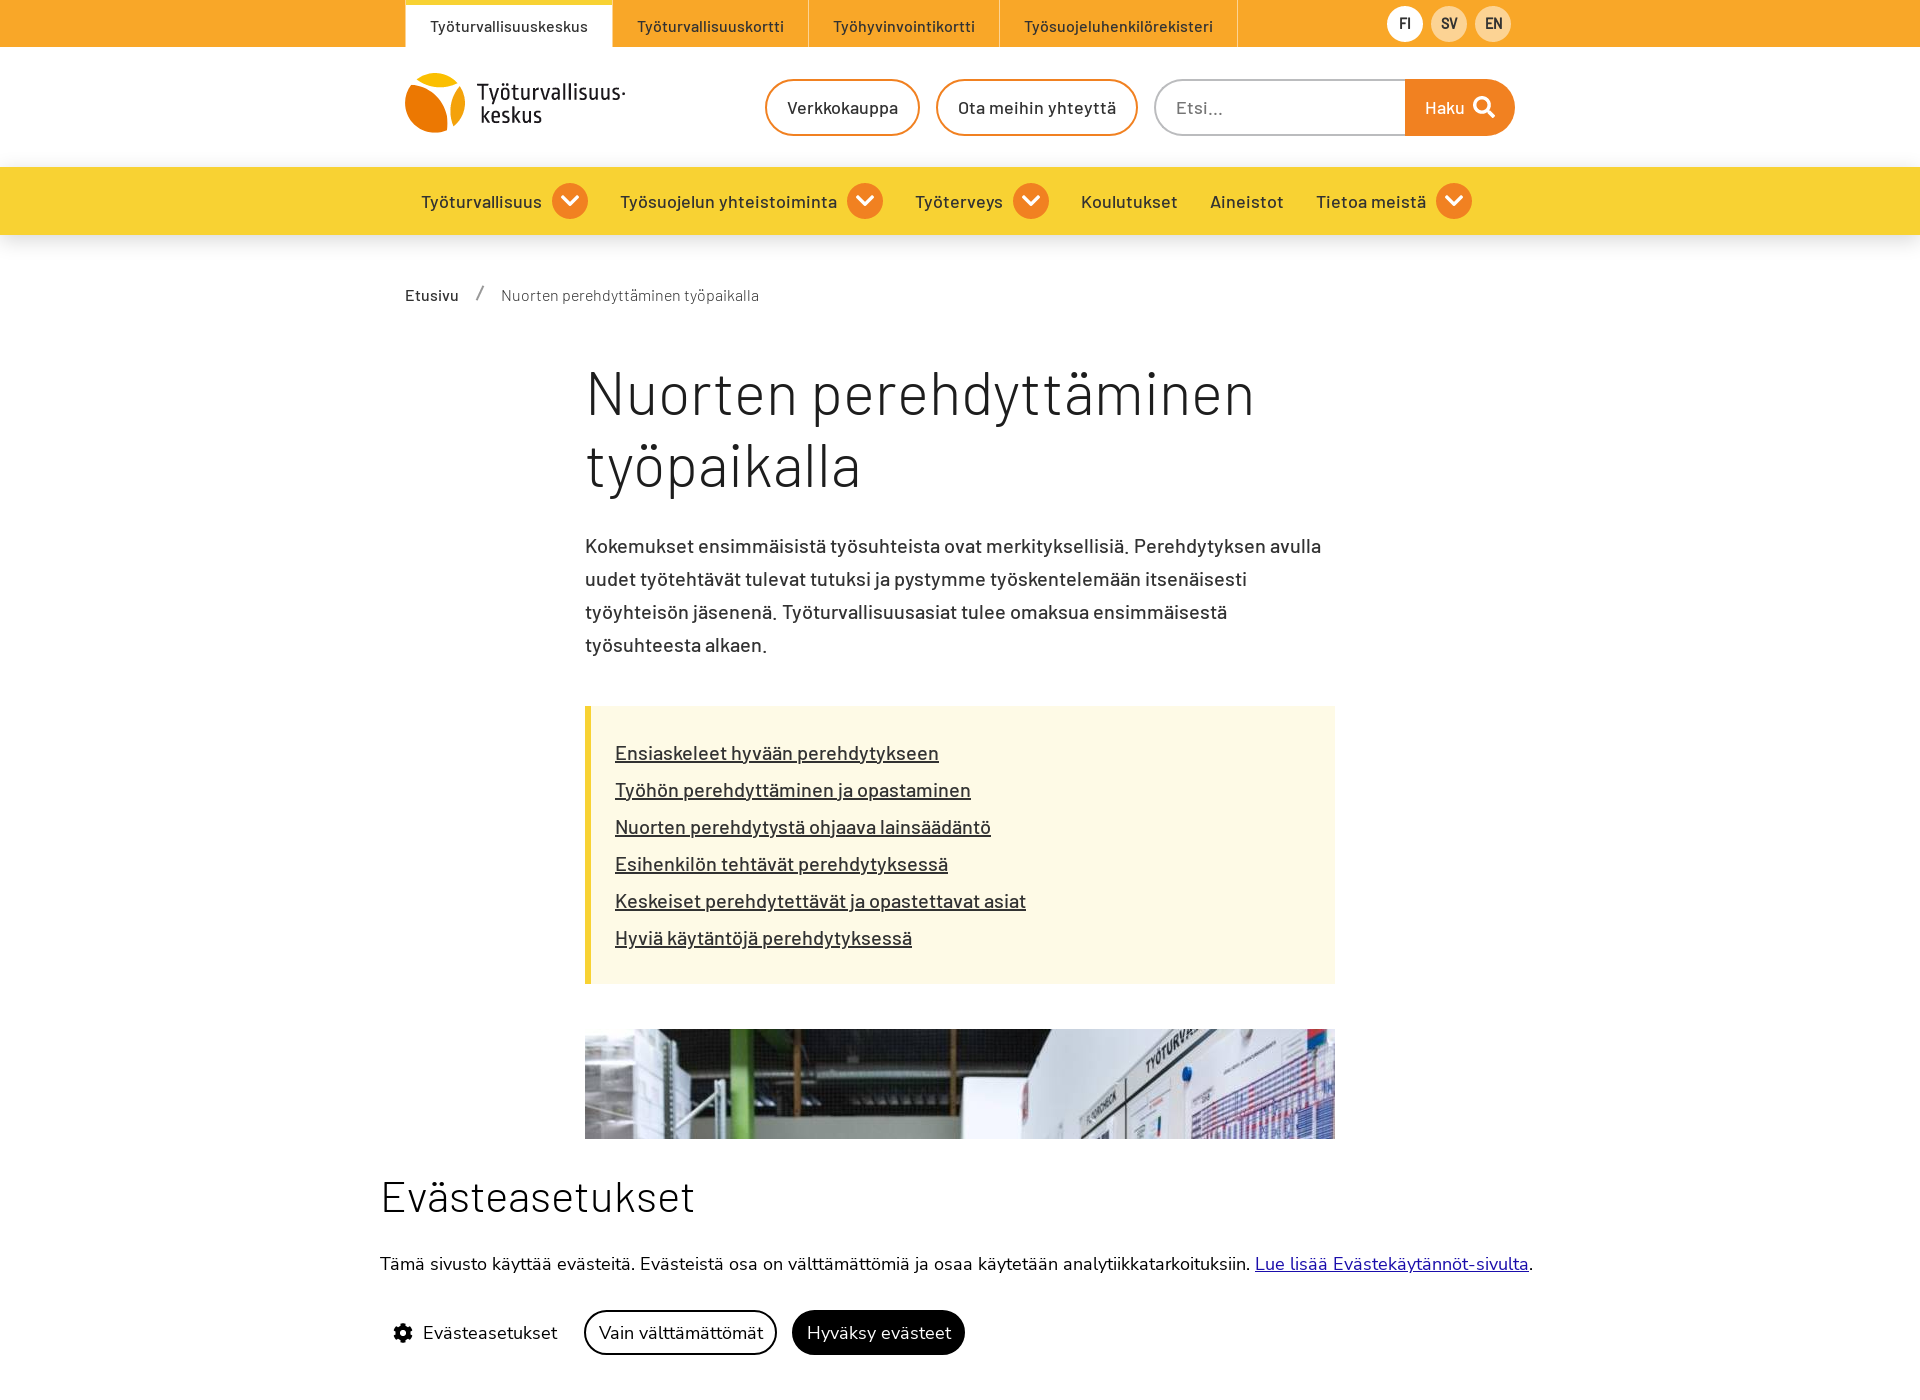 Näyttökuva perehdyta.fi